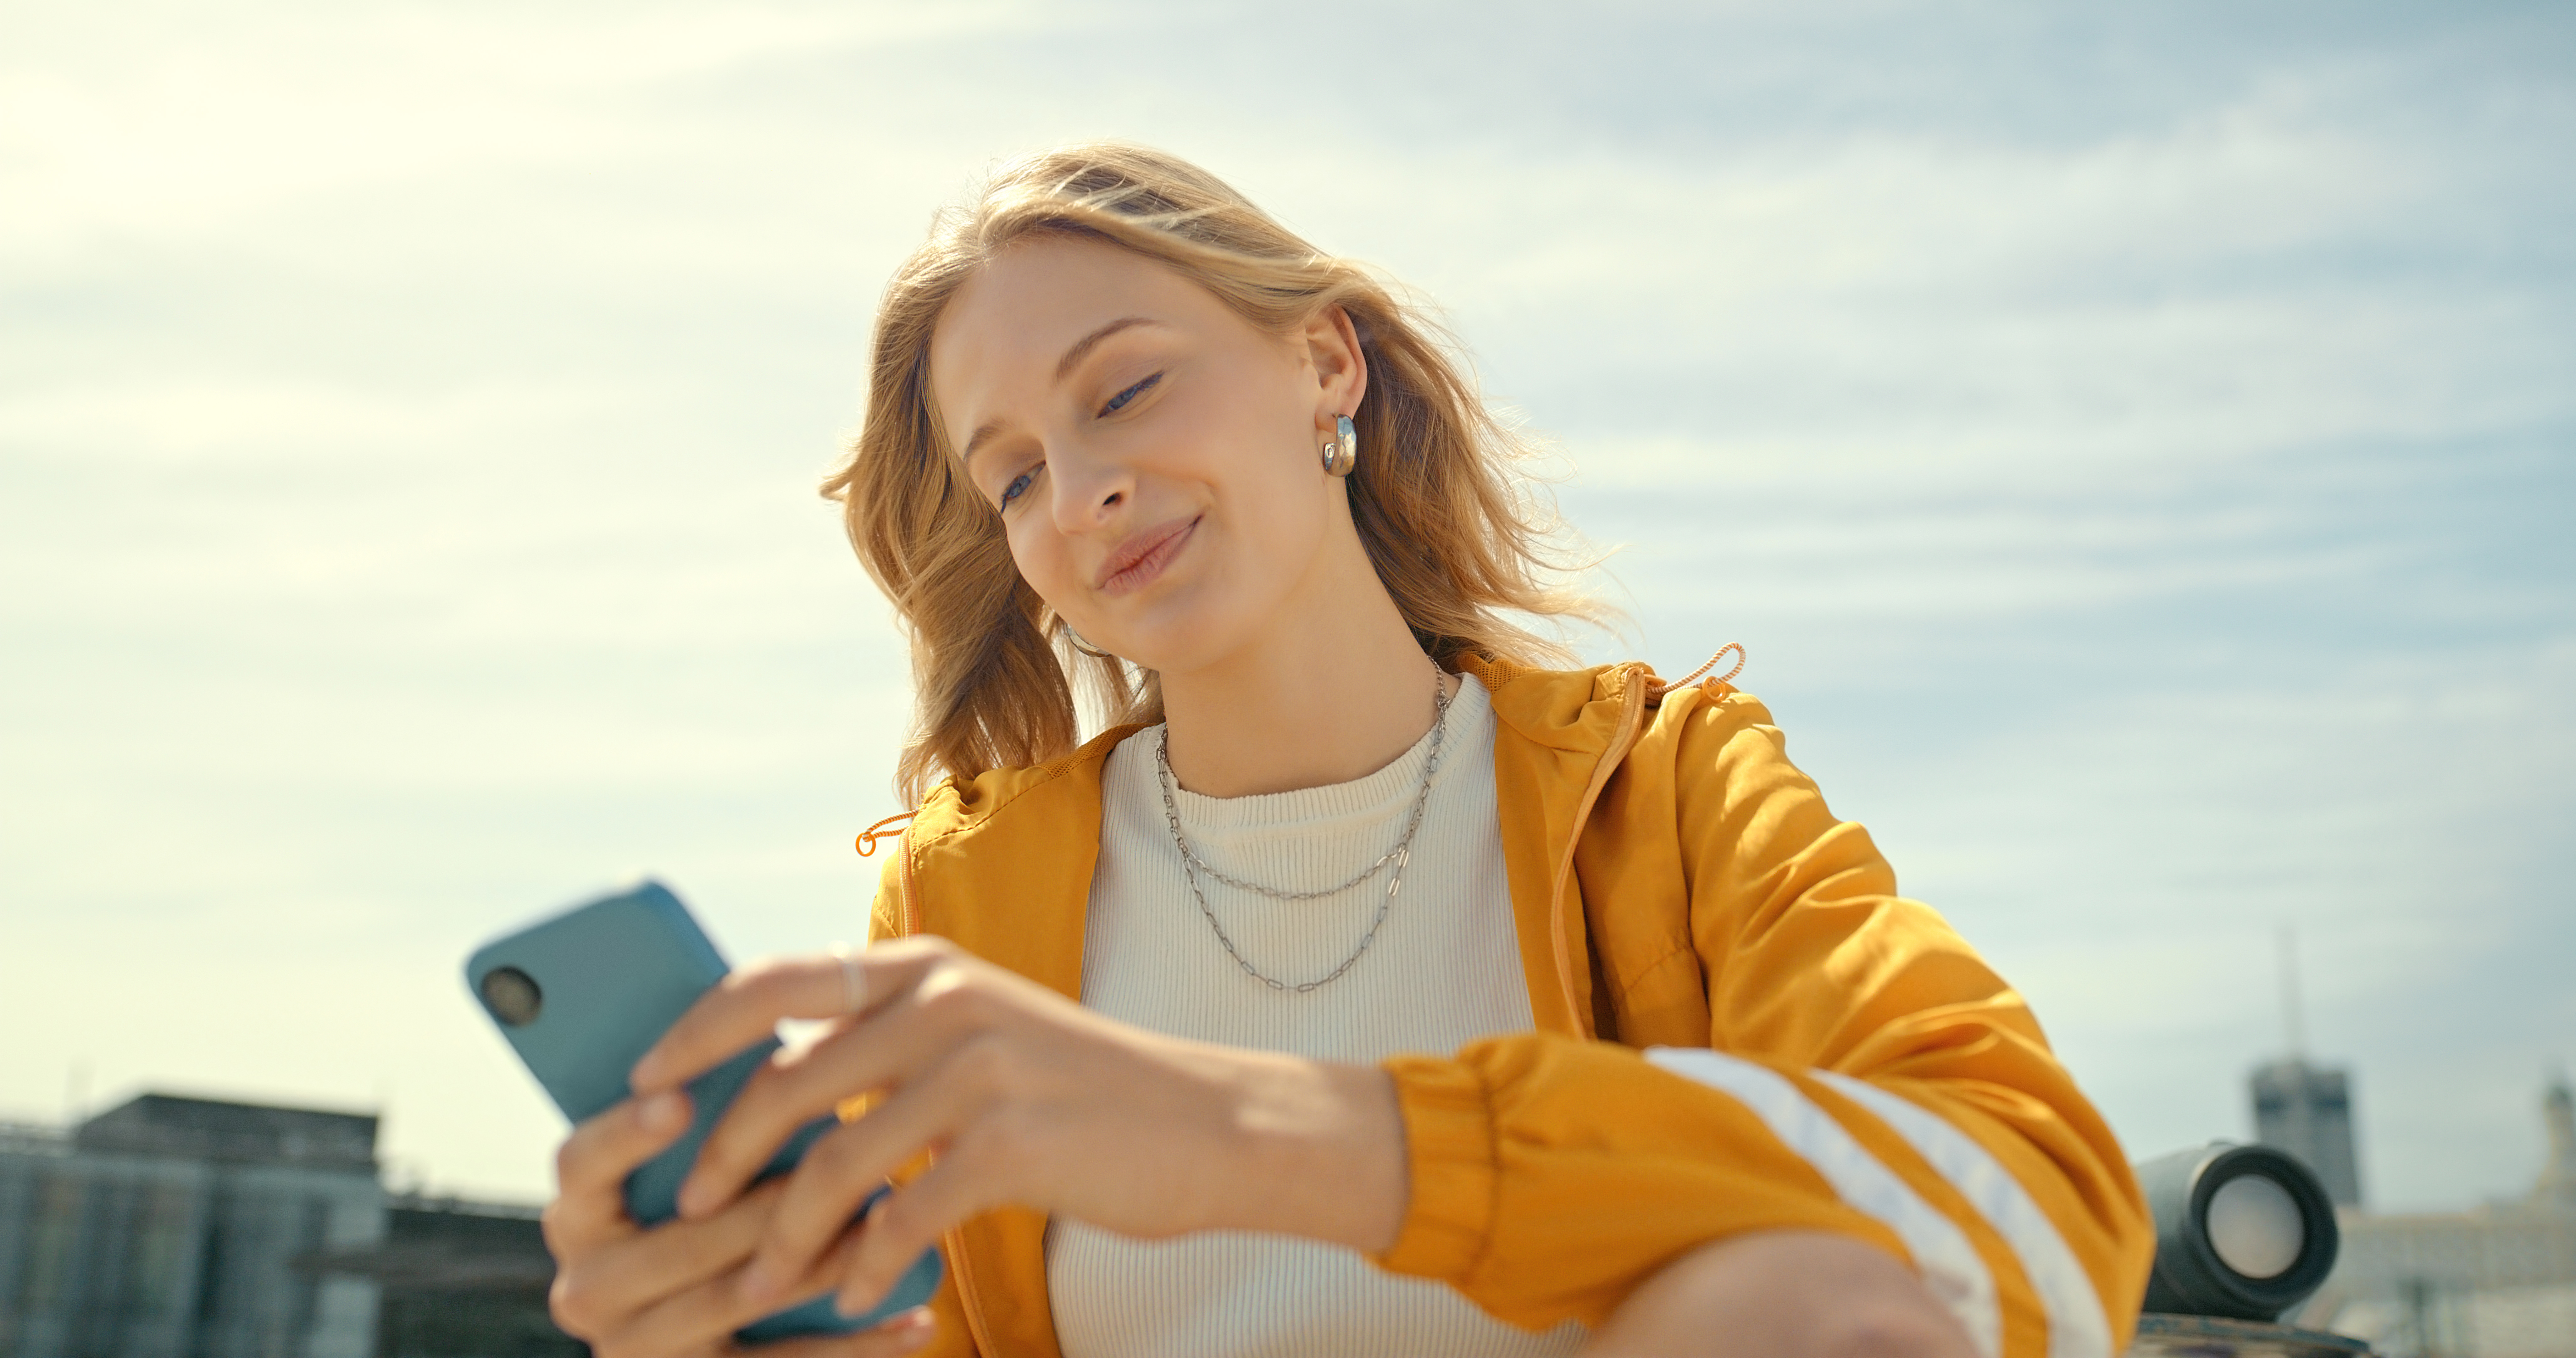 Teléfono, ciudad y mujer de moda en aplicación móvil, chateando o enviando mensajes de texto. | Foto: Getty Images